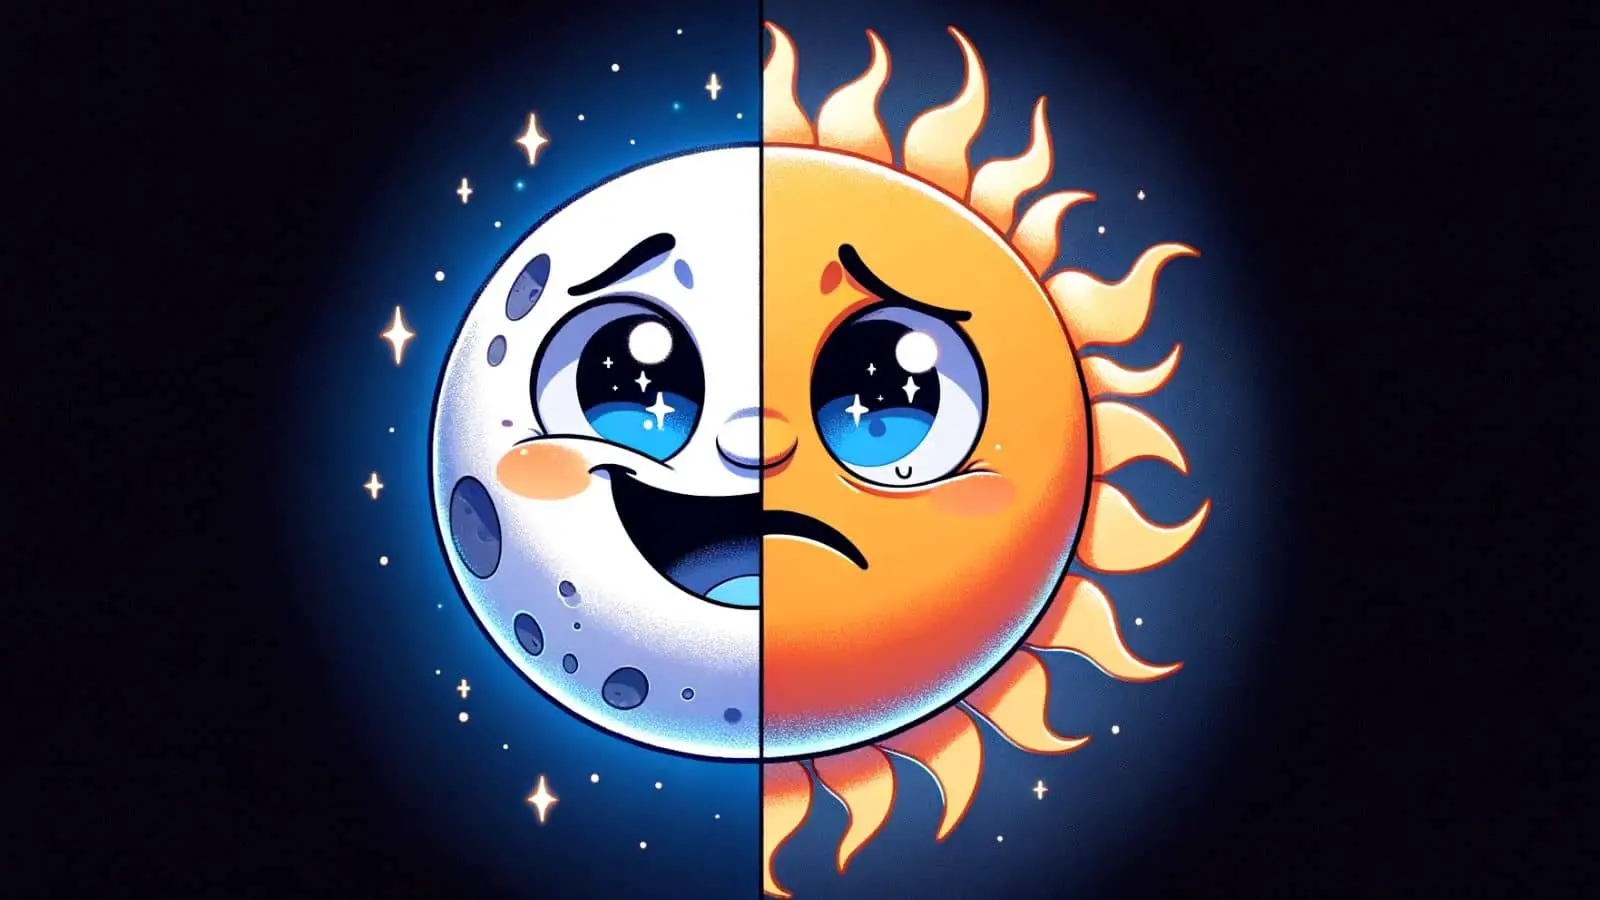 Funny Winter Solstice Jokes on Moon and Sun